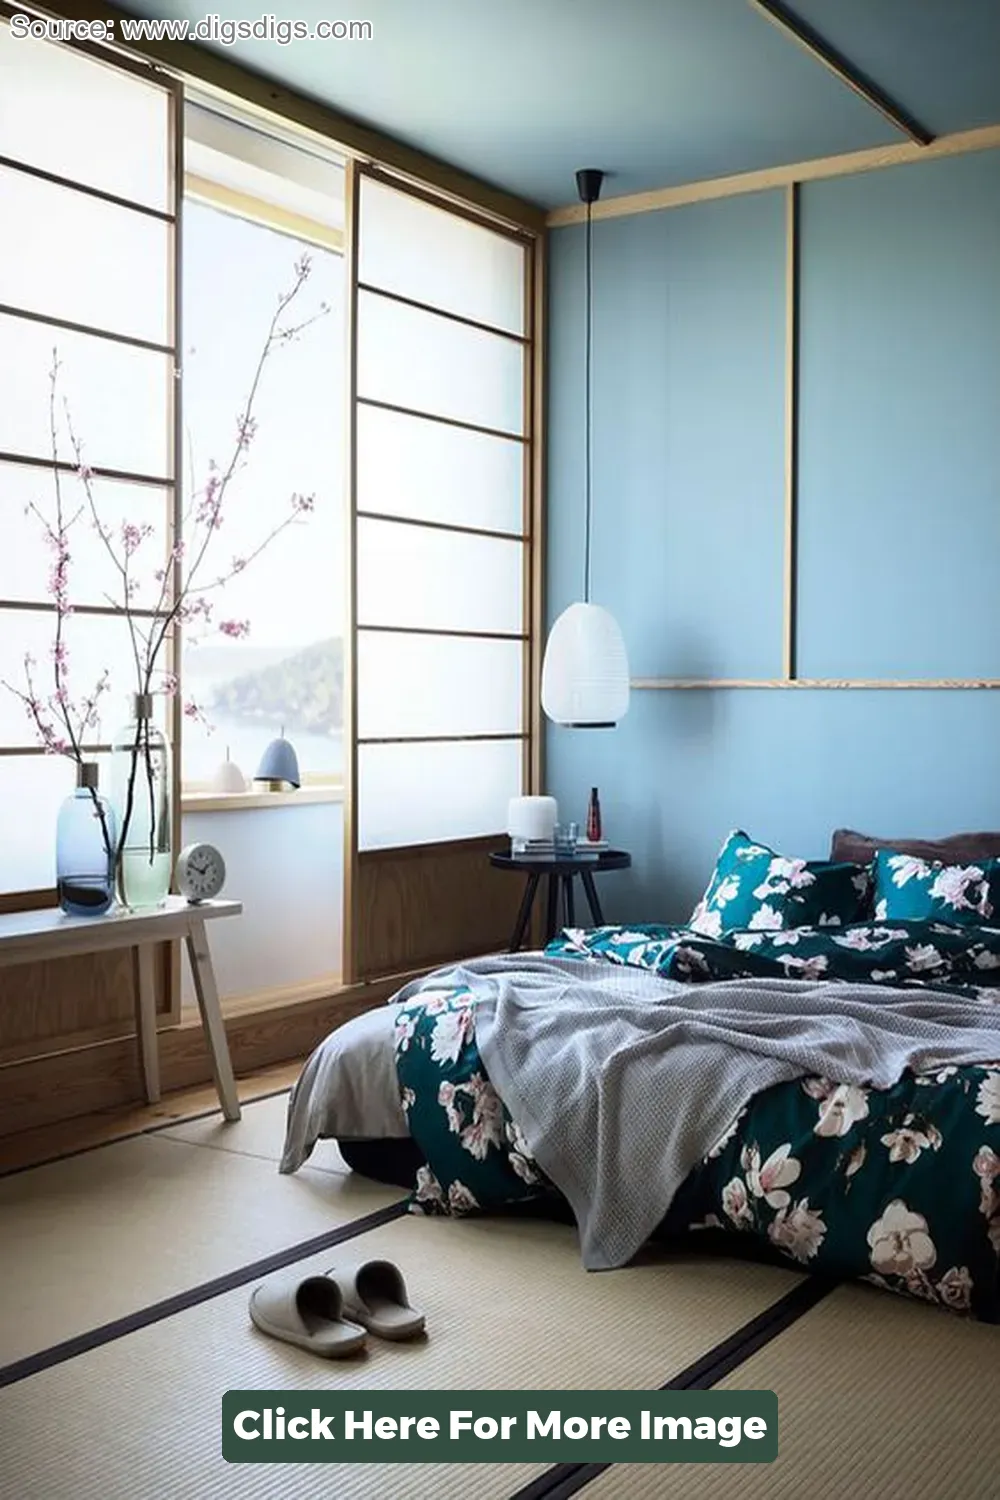 Top 40 Zen Interior Design Bedroom - CivilDetail